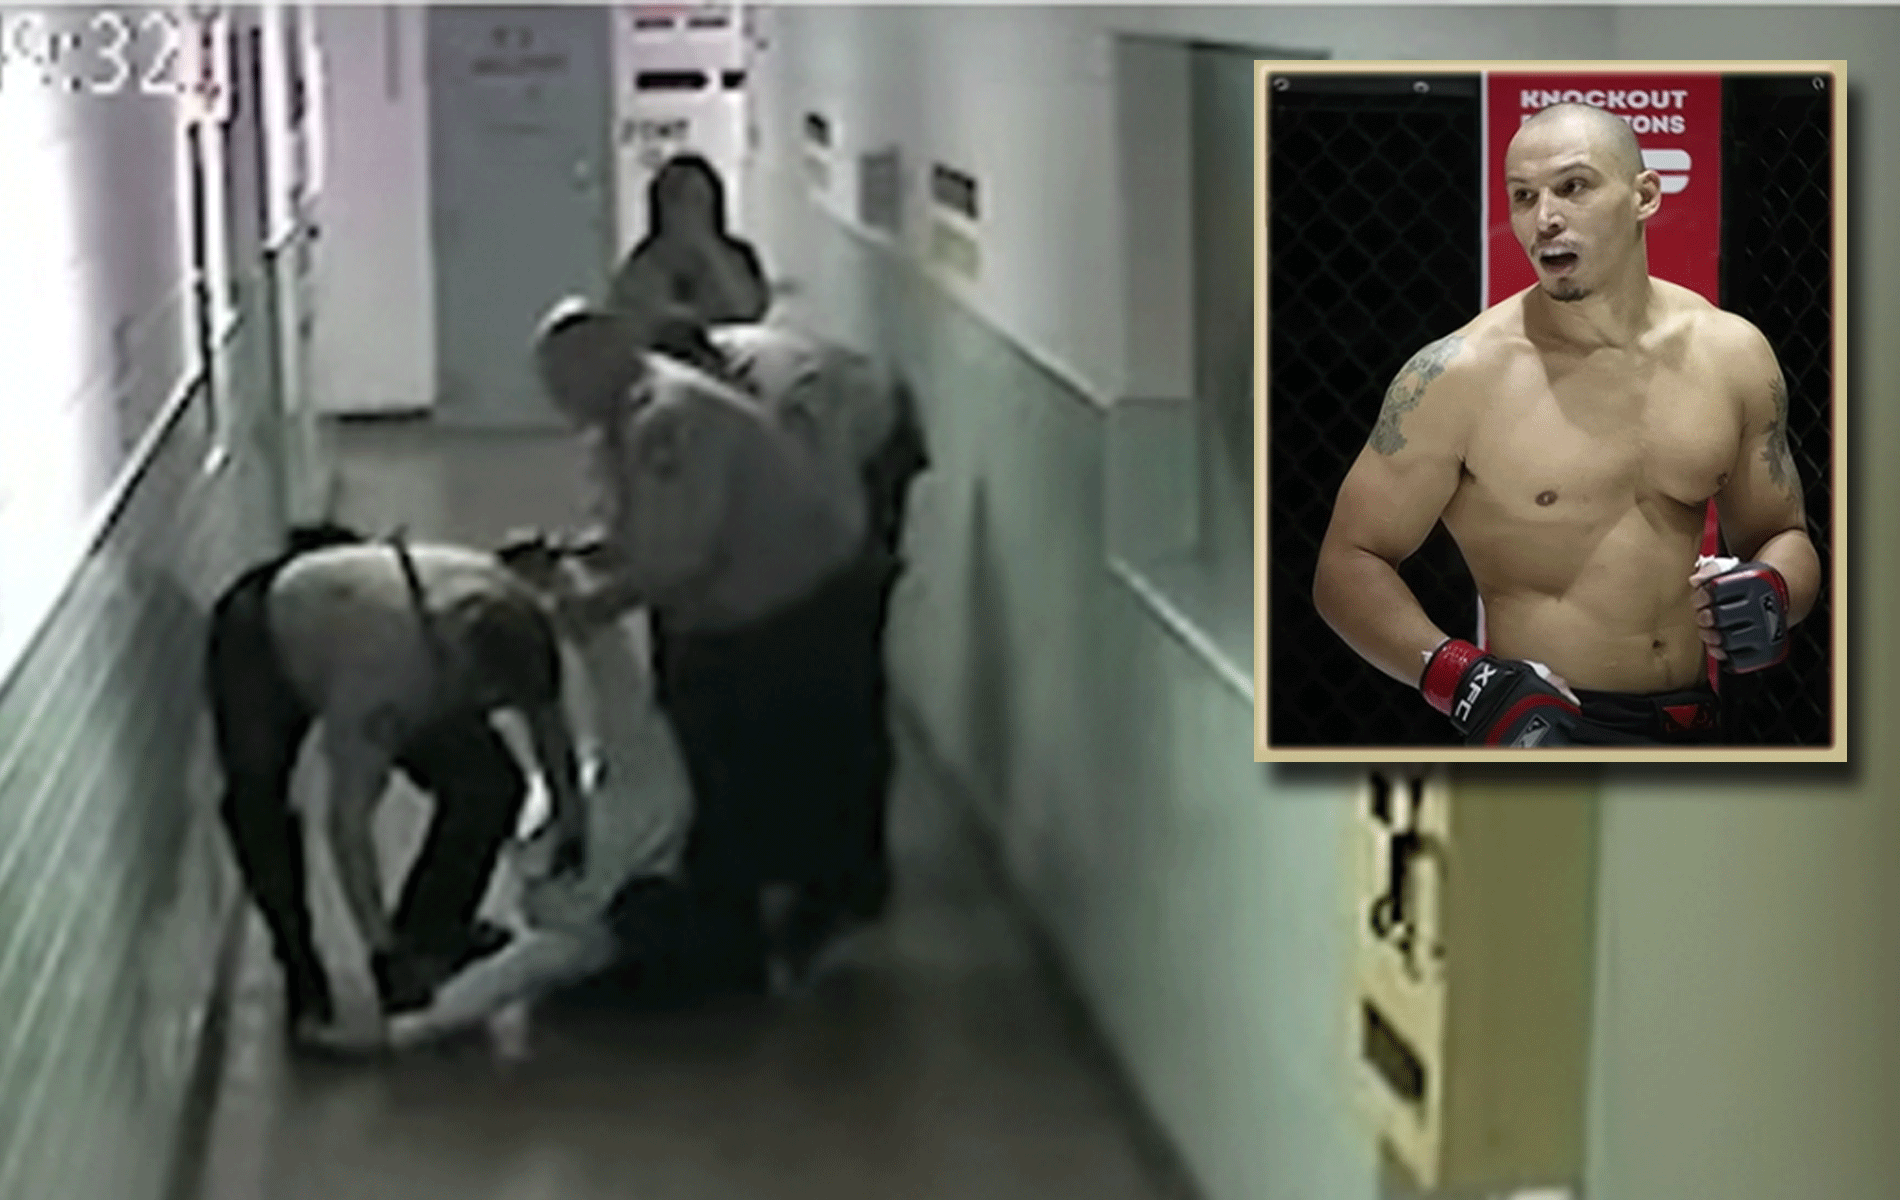 Zwaar mishandeld! Arrestatie video MMA-vechter roept afschuw op